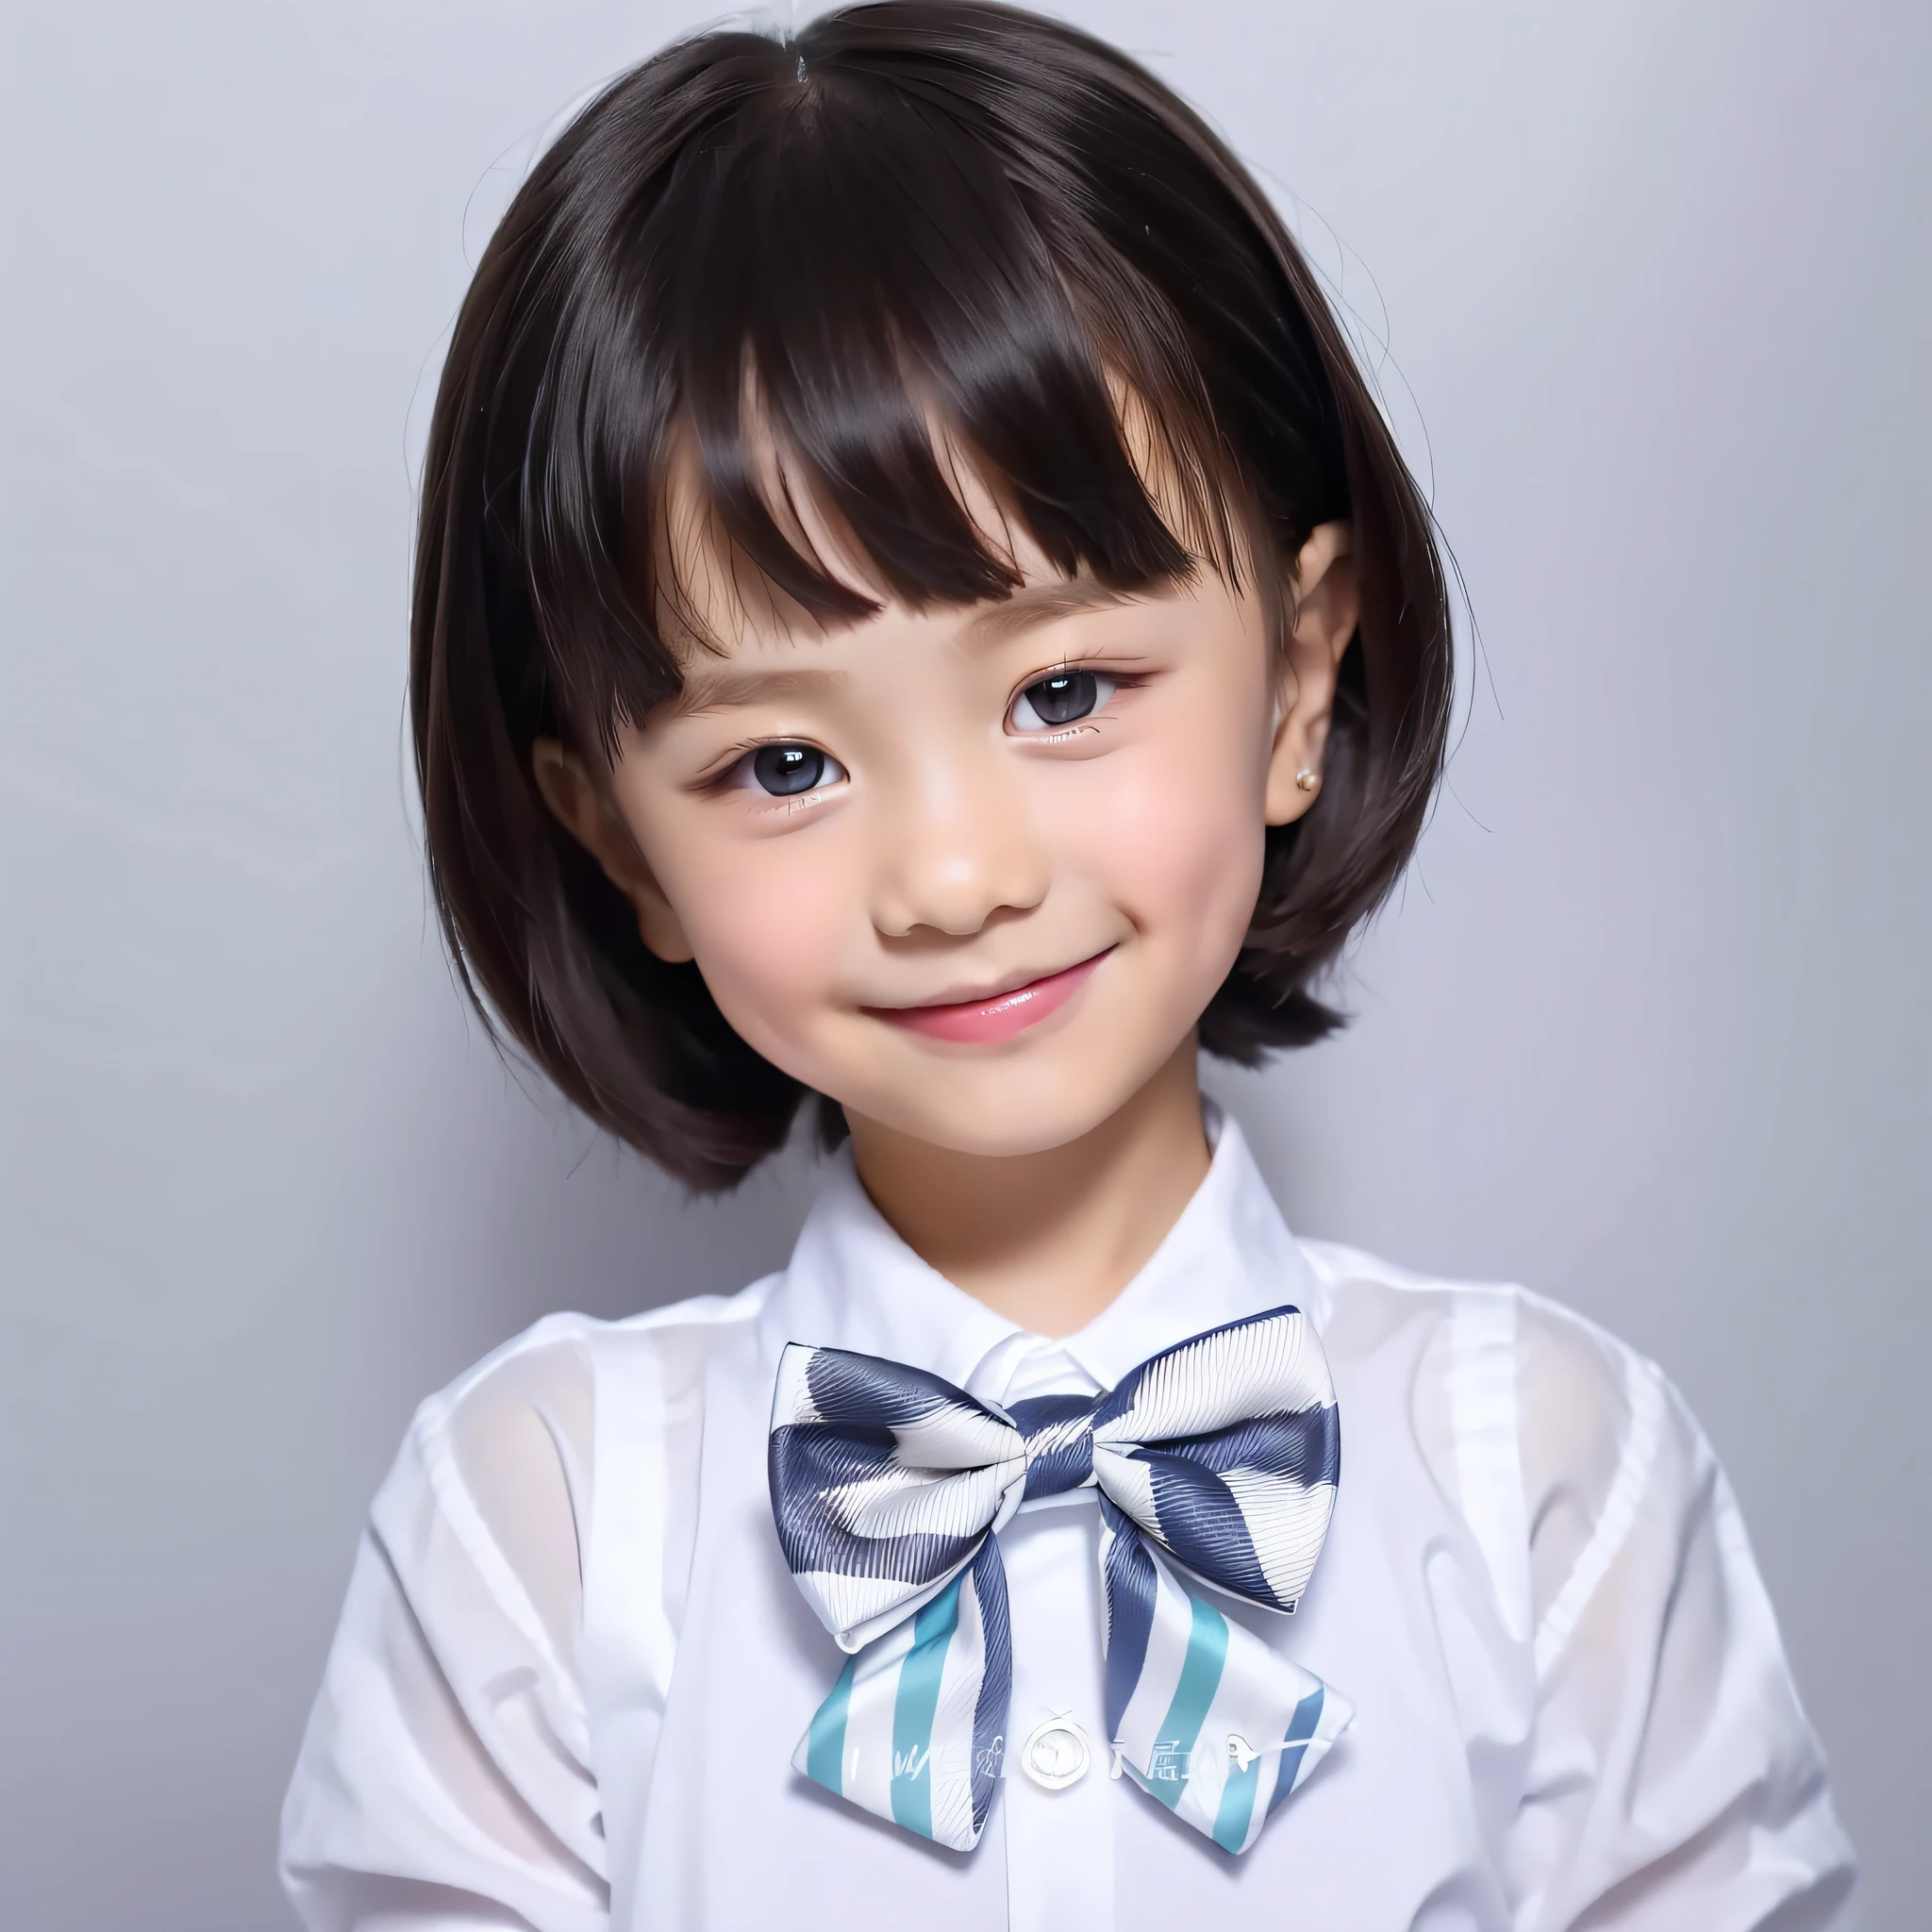 moderner Stil, weißer Hintergrund, Ausweisfoto für Kinder, Niedlich, Lächelndes Mädchen, Dunkle Augen, kurzes Haar, Krawatte, klar